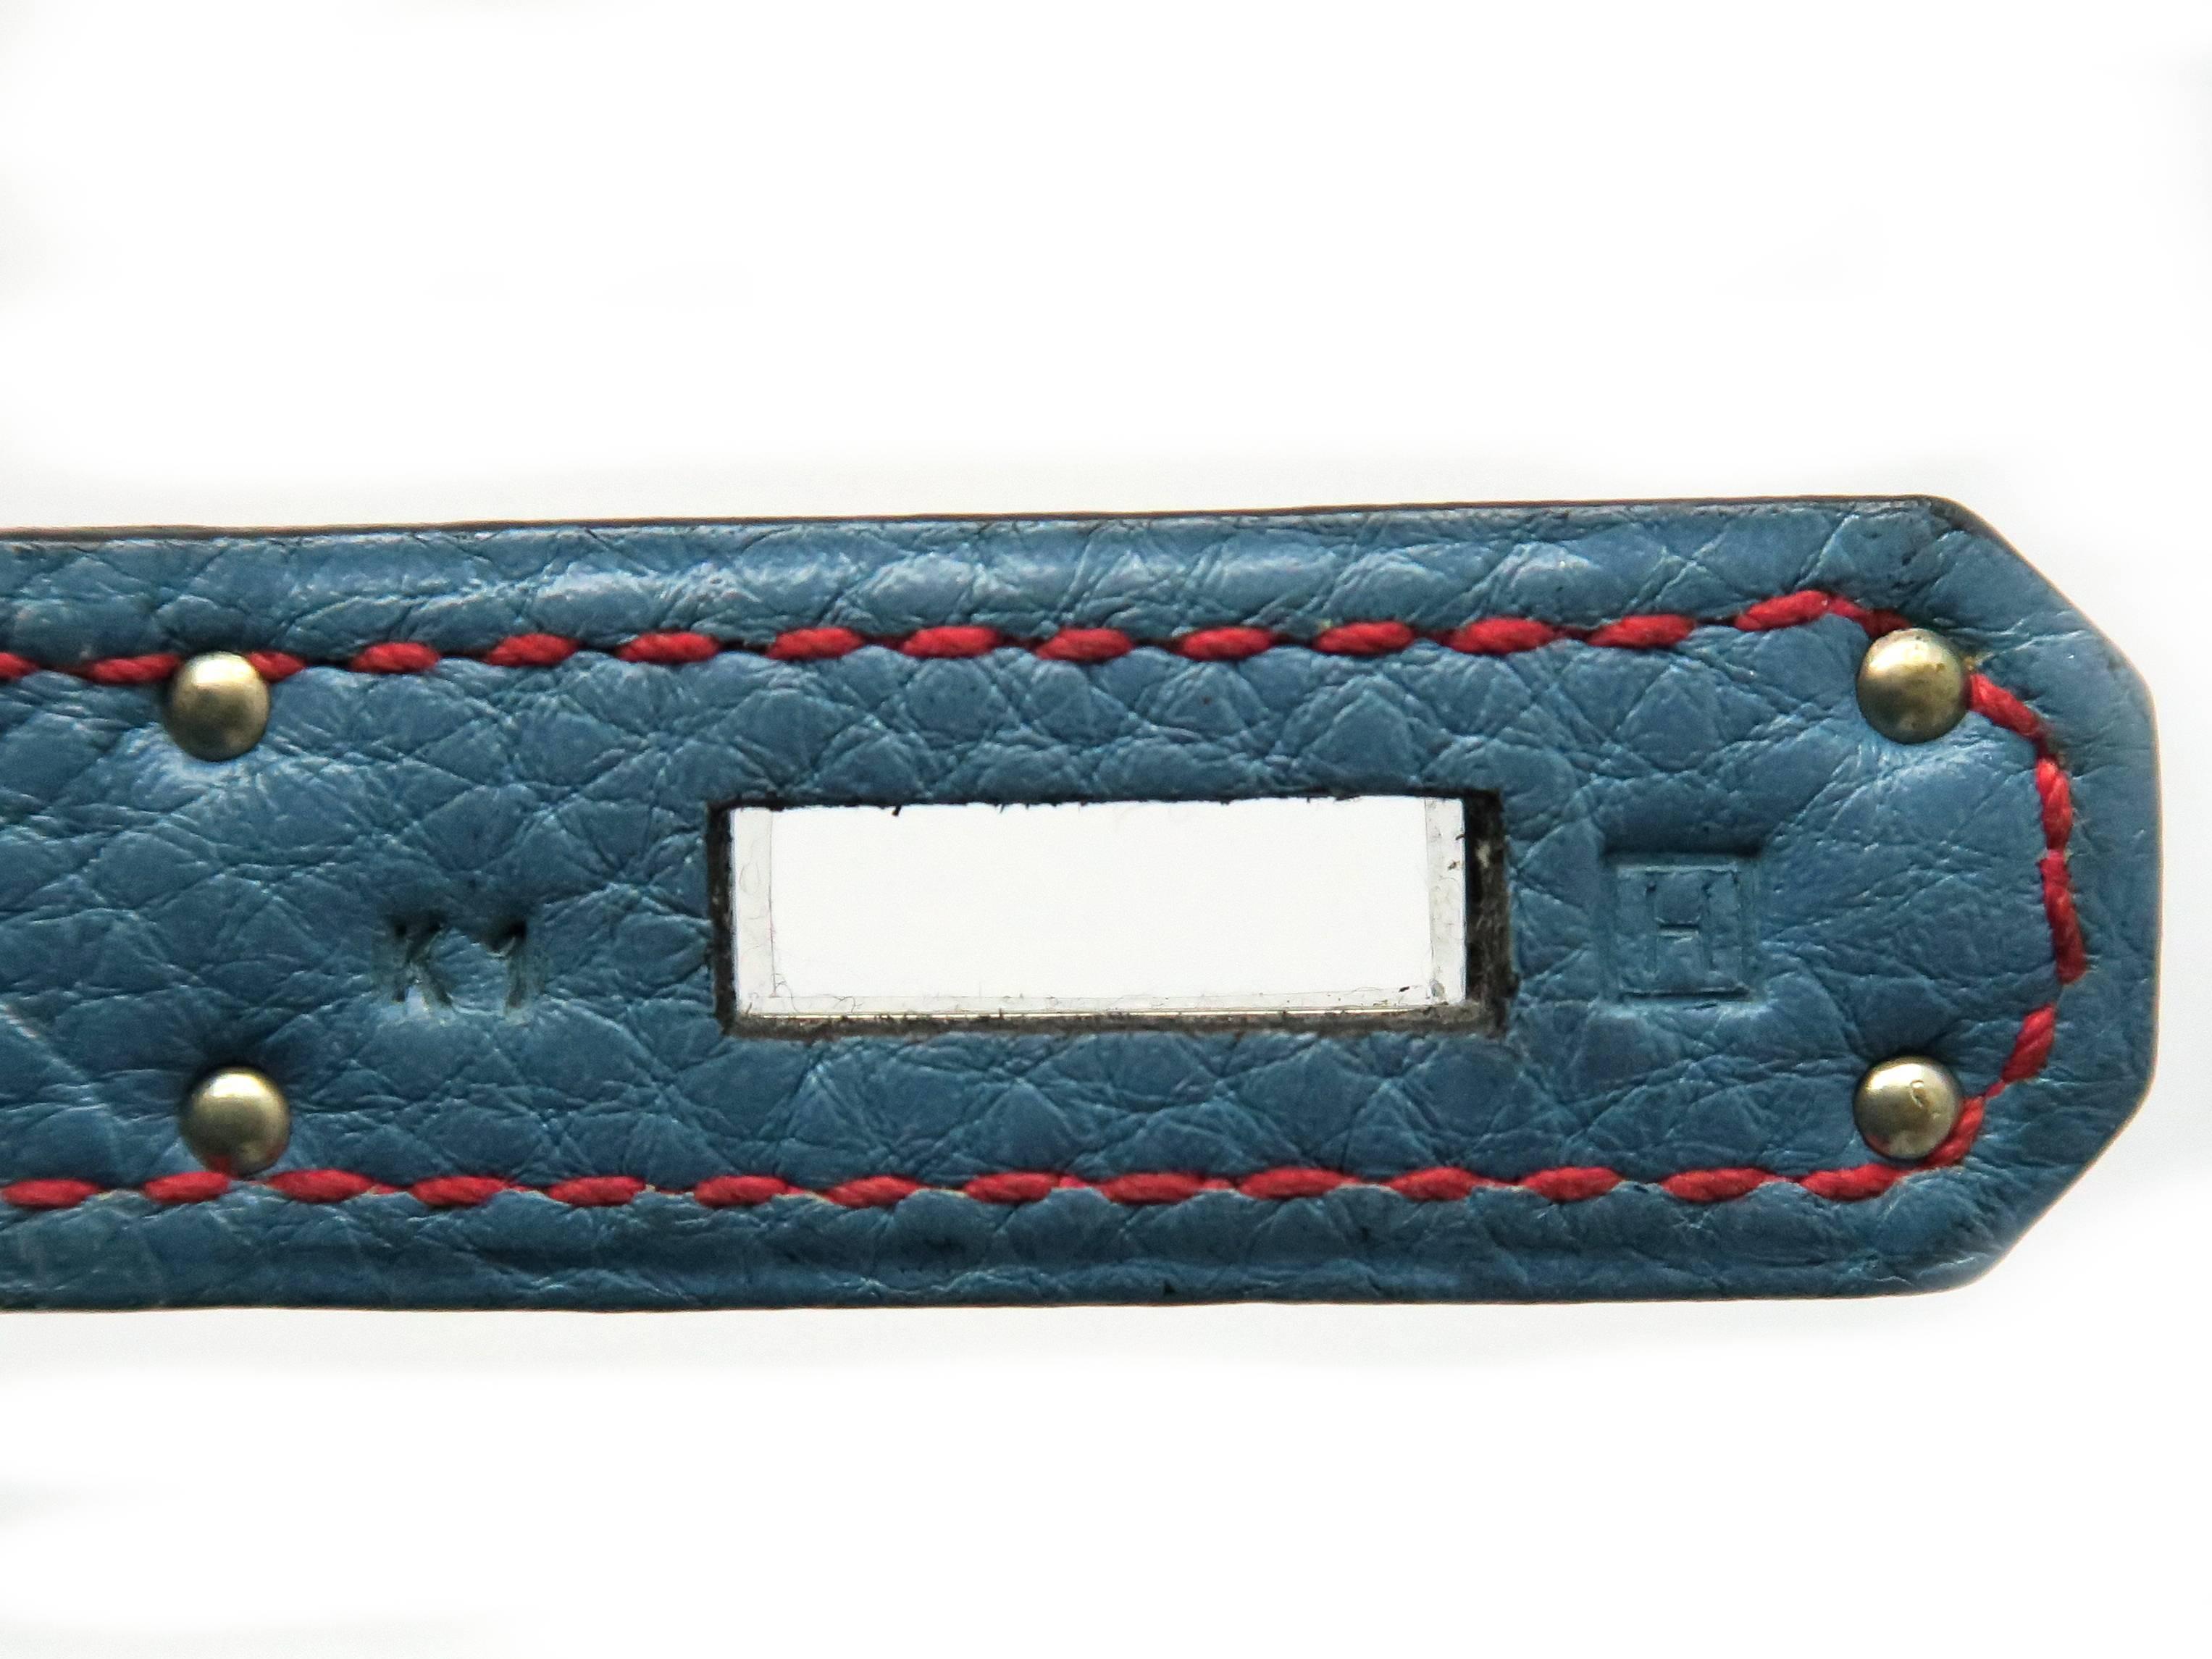 Hermes Birkin 30 Bleu Jean Blue Togo Leather SHW Top Handle Bag 6